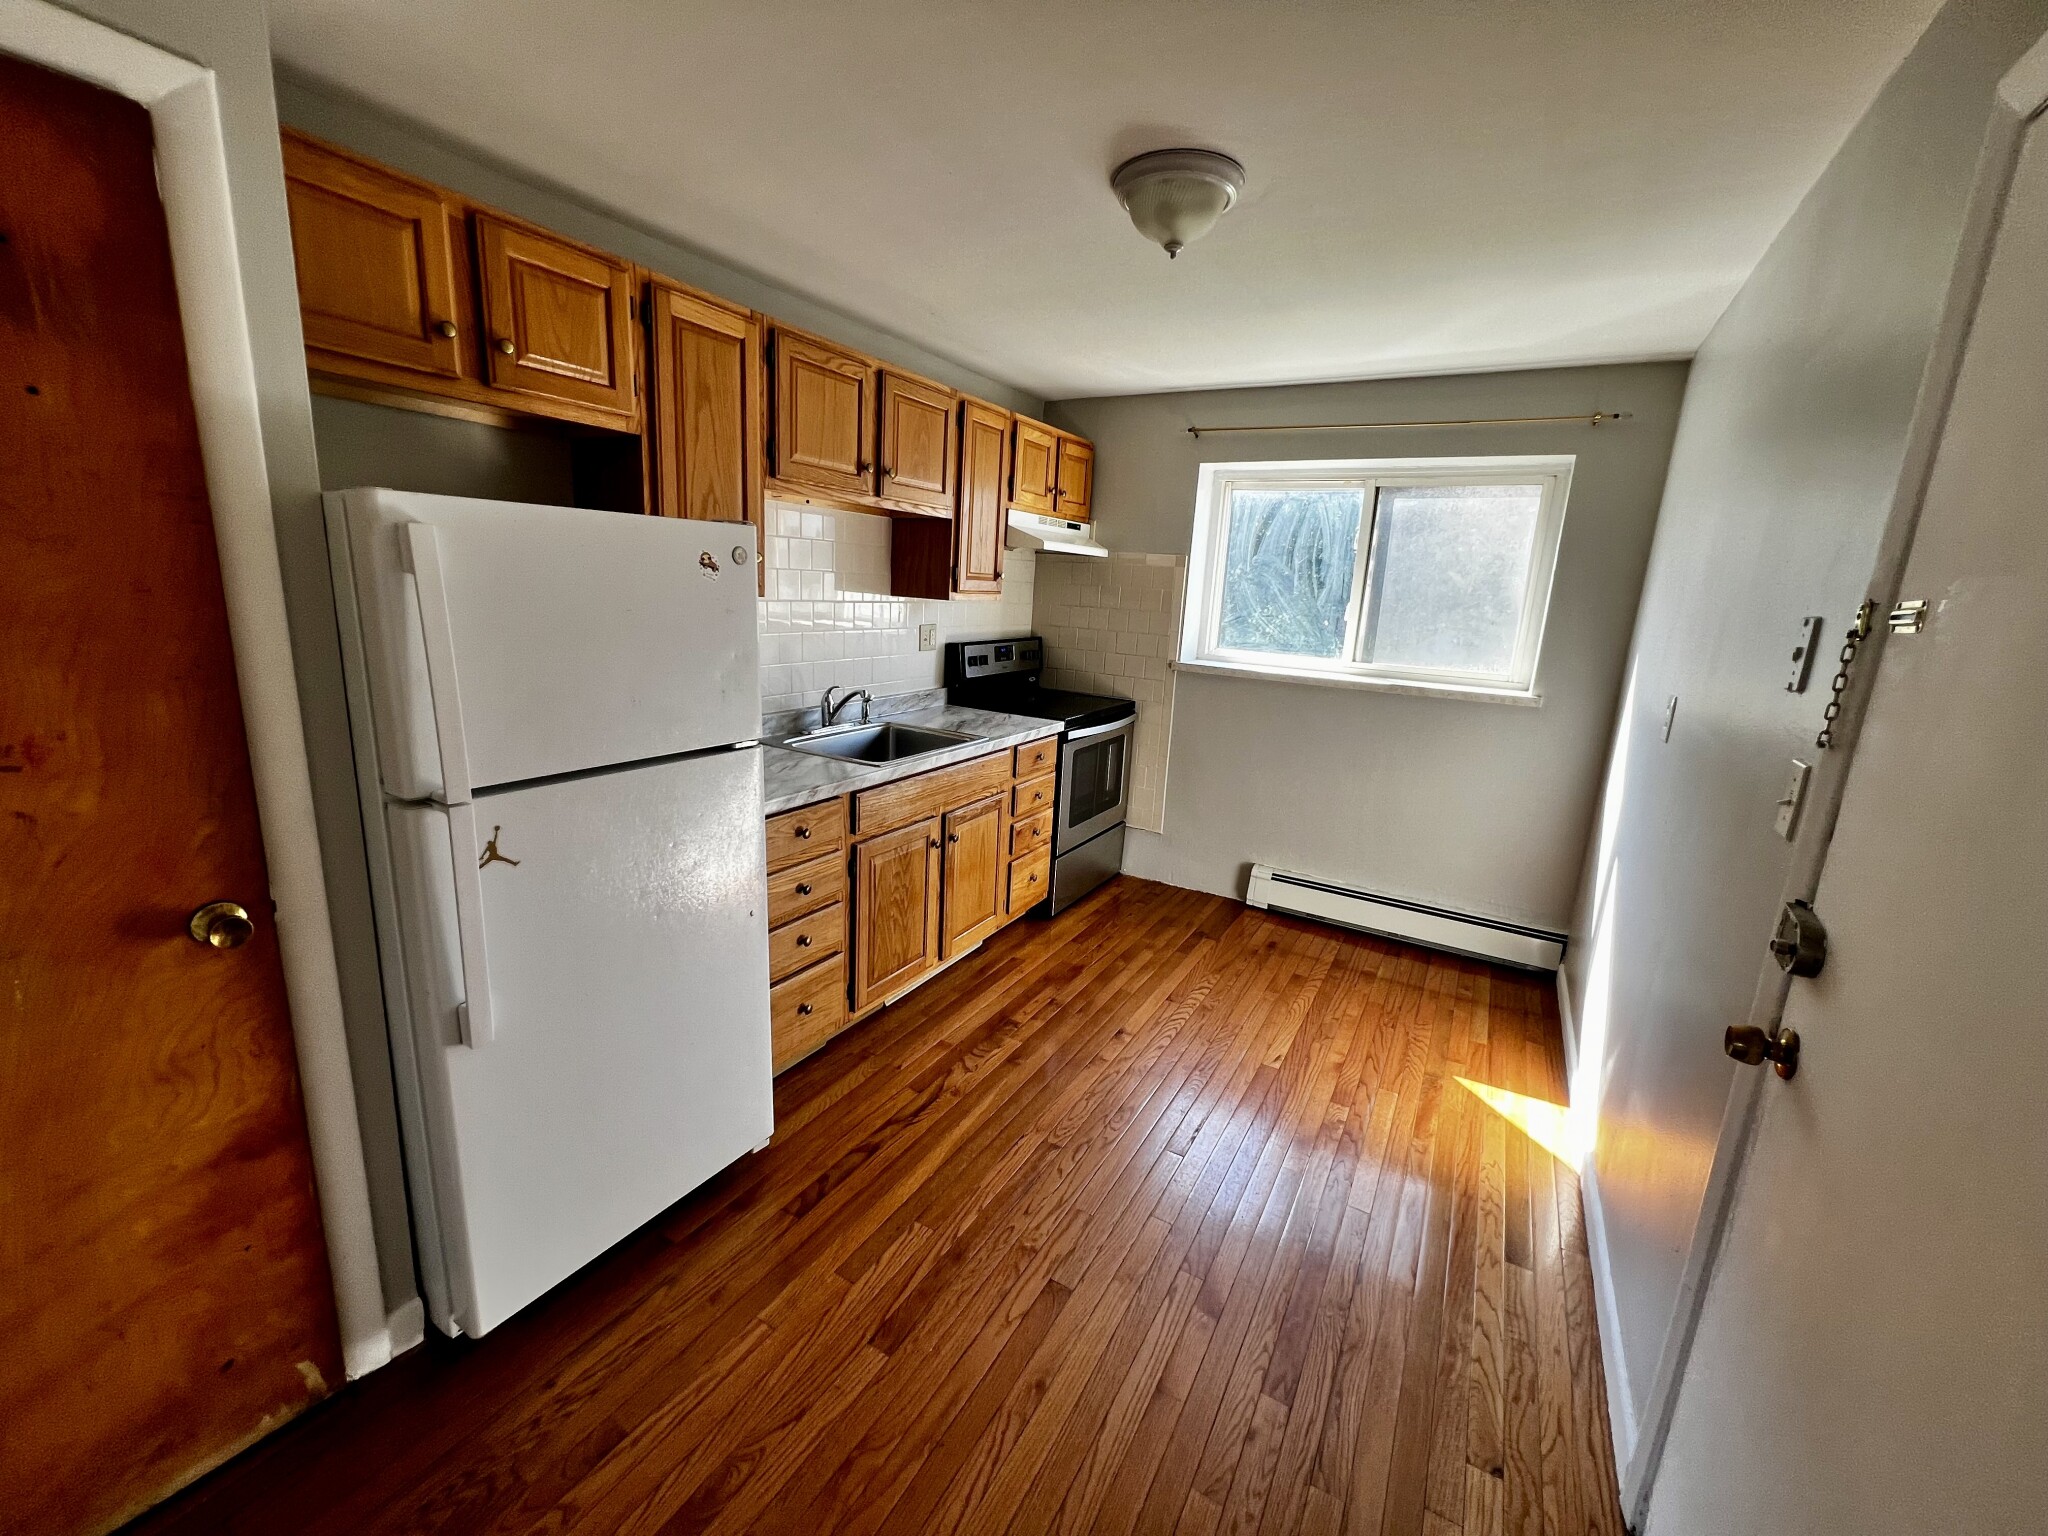 Photos of apartment on Fairmount Ave.,Boston MA 02136